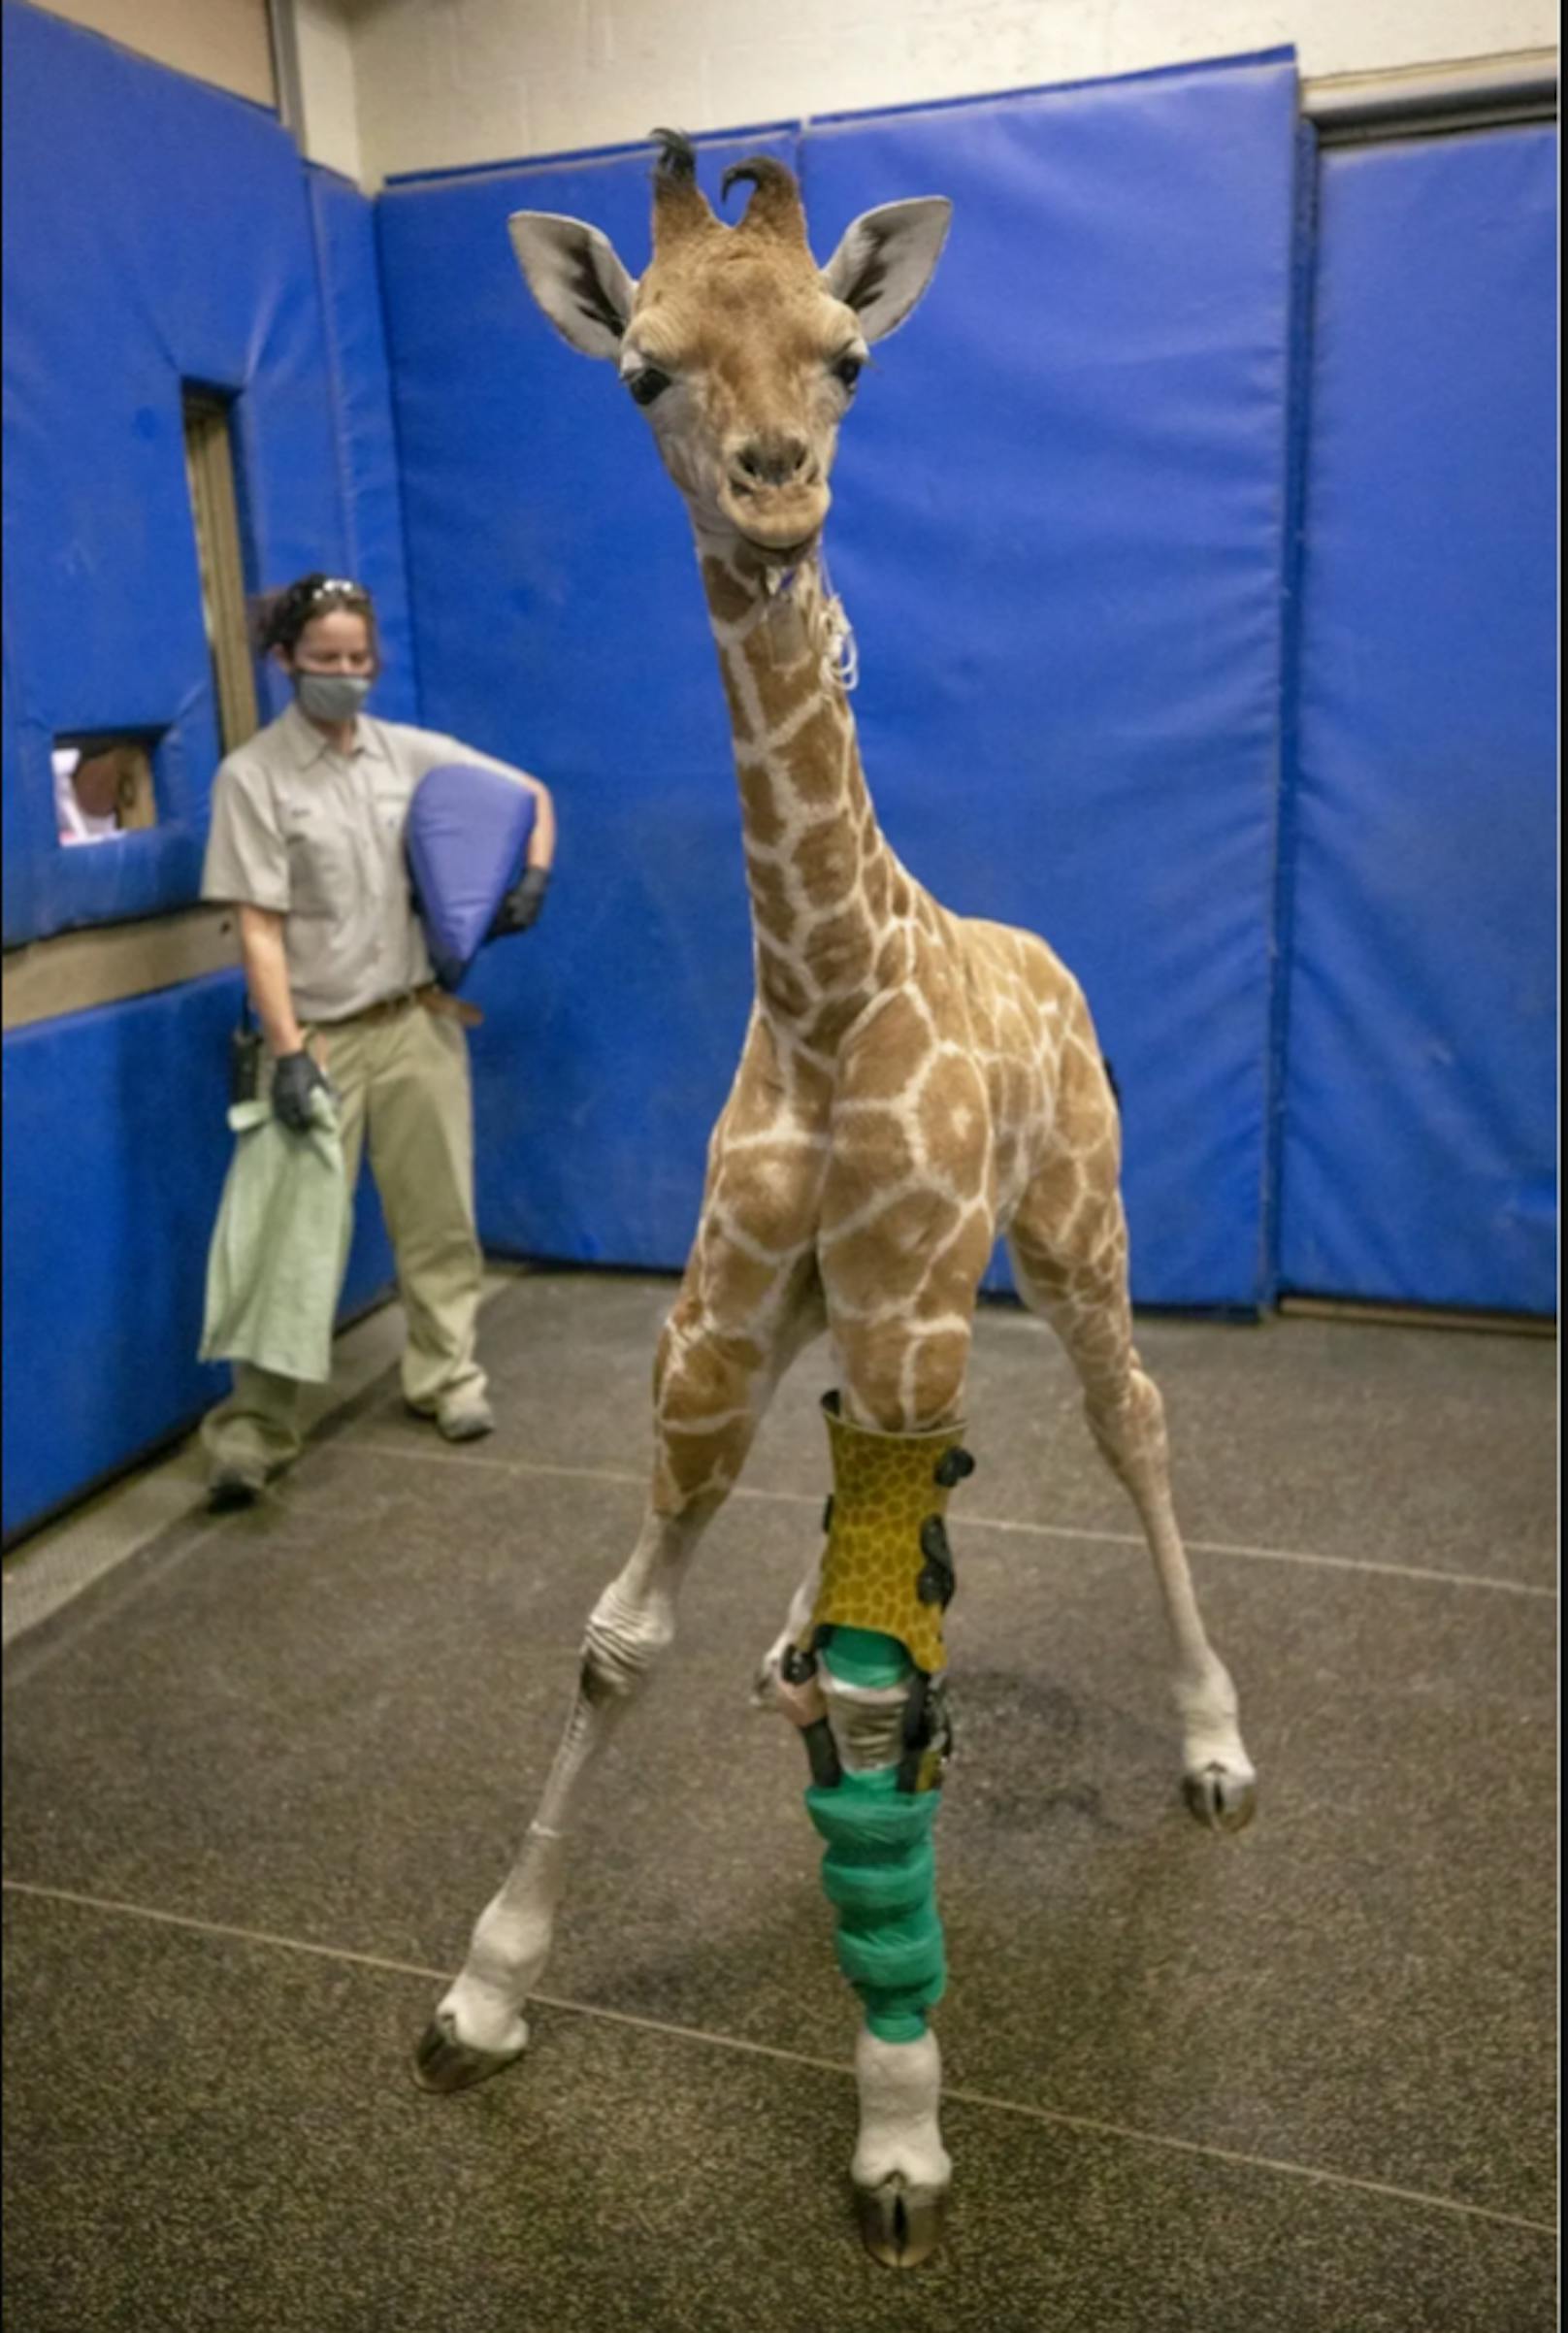 Dank OP und Beinorthesen macht Giraffe Freudensprünge